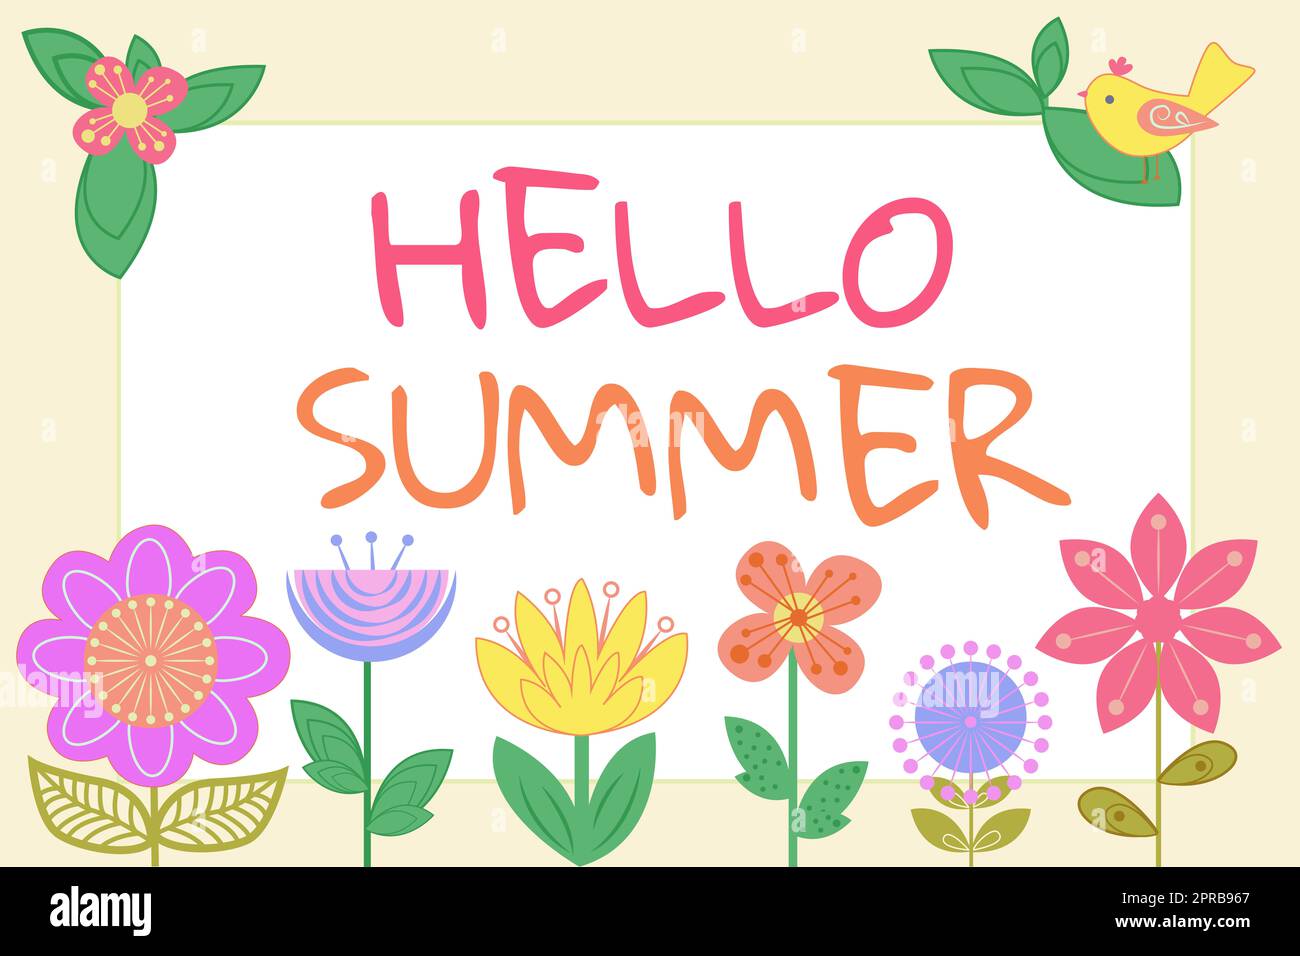 Affiche Hello Summer. Approche commerciale l'accueil de la saison la plus chaude de l'année arrive après le printemps cadre avec des oiseaux, des feuilles et des fleurs et des données importantes à l'intérieur. Banque D'Images